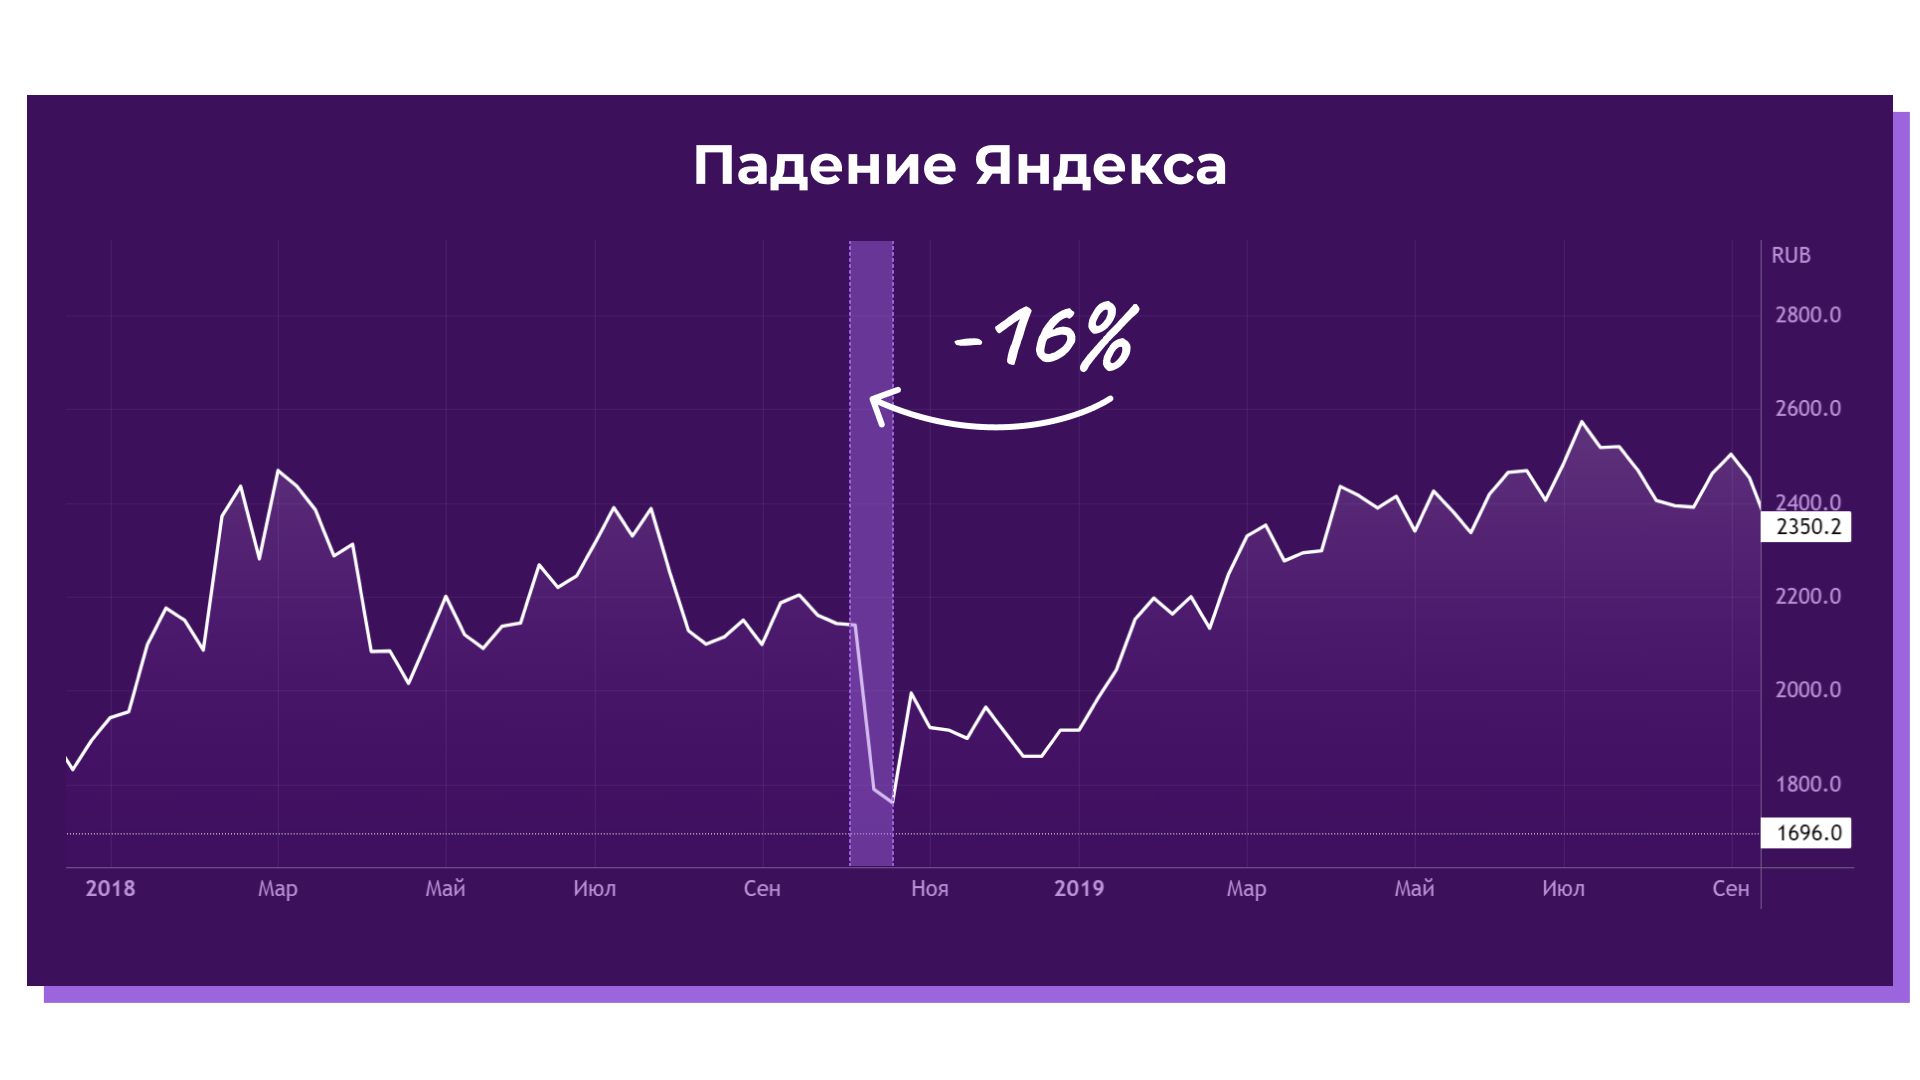 Реакция рынка на новости: пример Яндекса, октябрь 2019 года